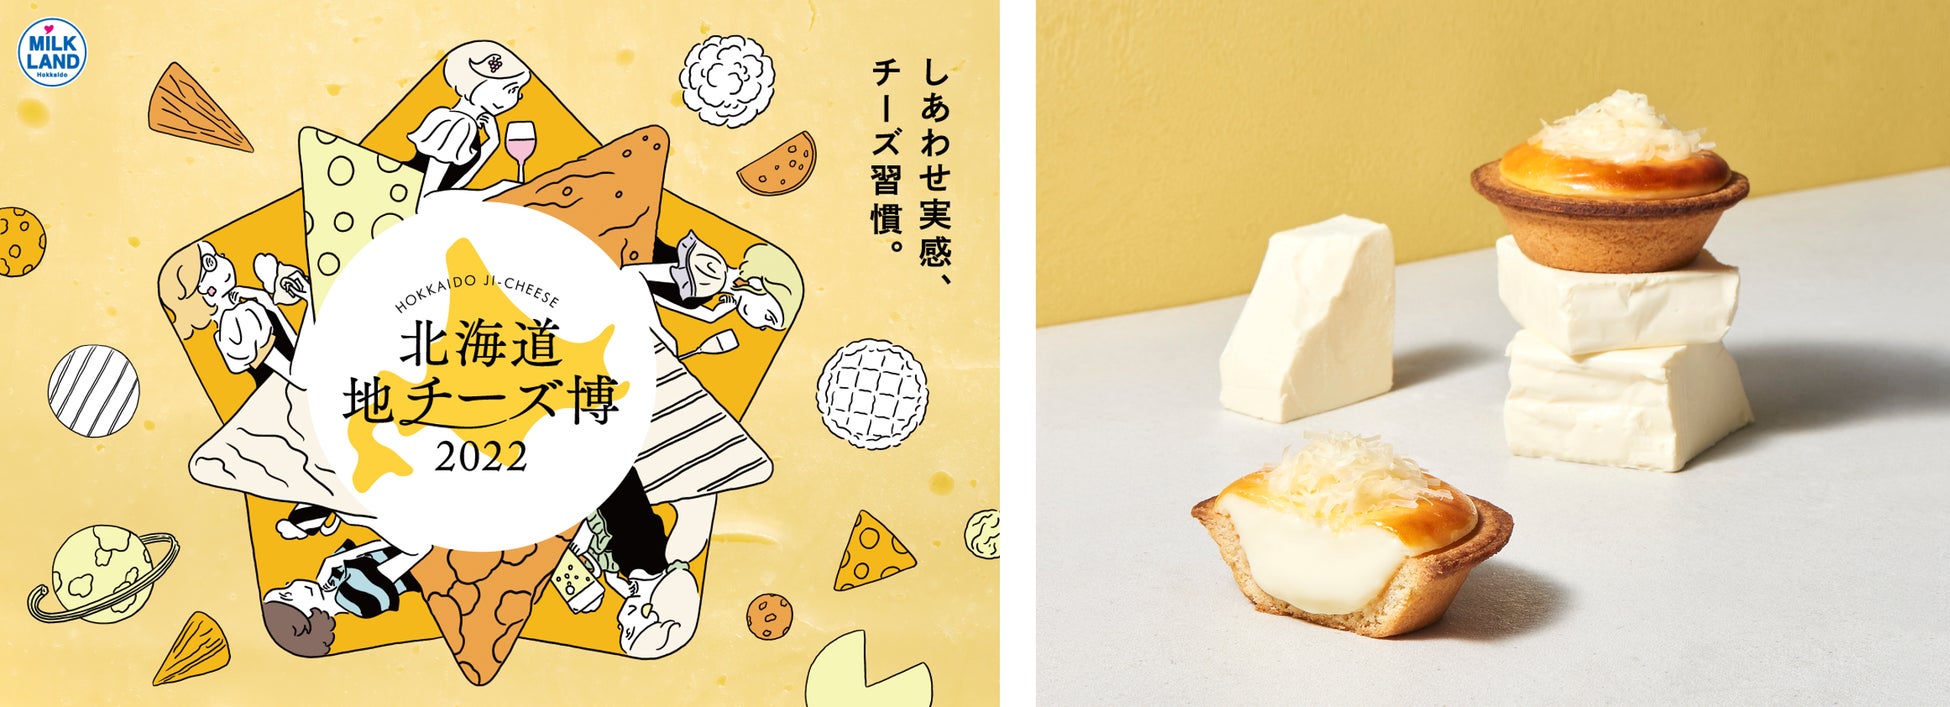 絶品地チーズが渋谷ヒカリエに大集結する『北海道地チーズ博 2022』北海道地チーズが楽しめる特別コラボメニュー16品を公開